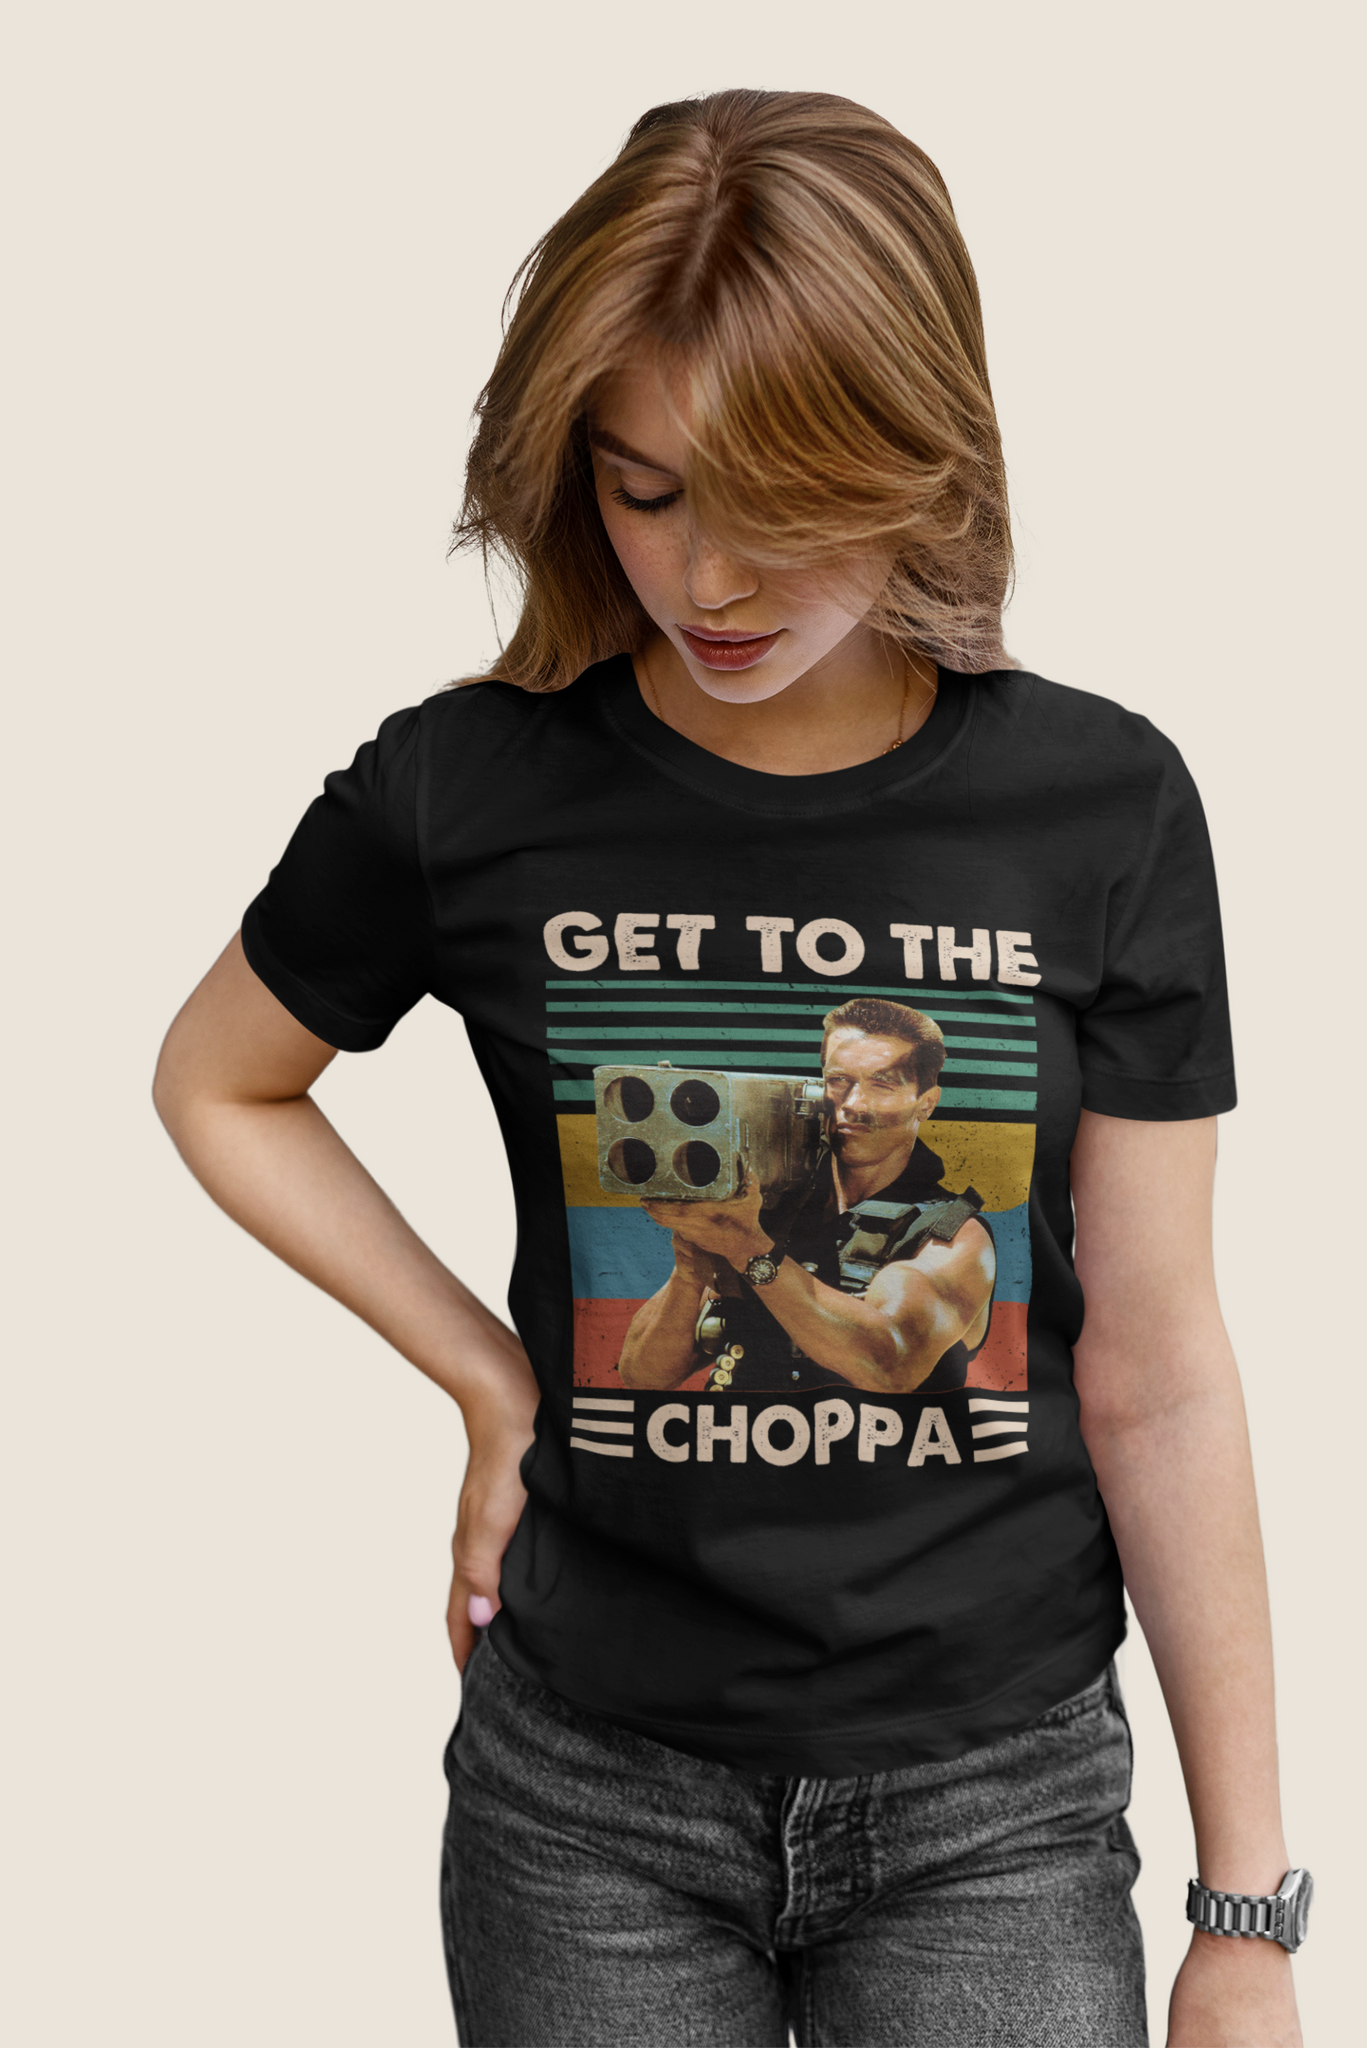 Commando Vintage T Shirt, John Matrix T Shirt, Get To The Choppa Tshirt